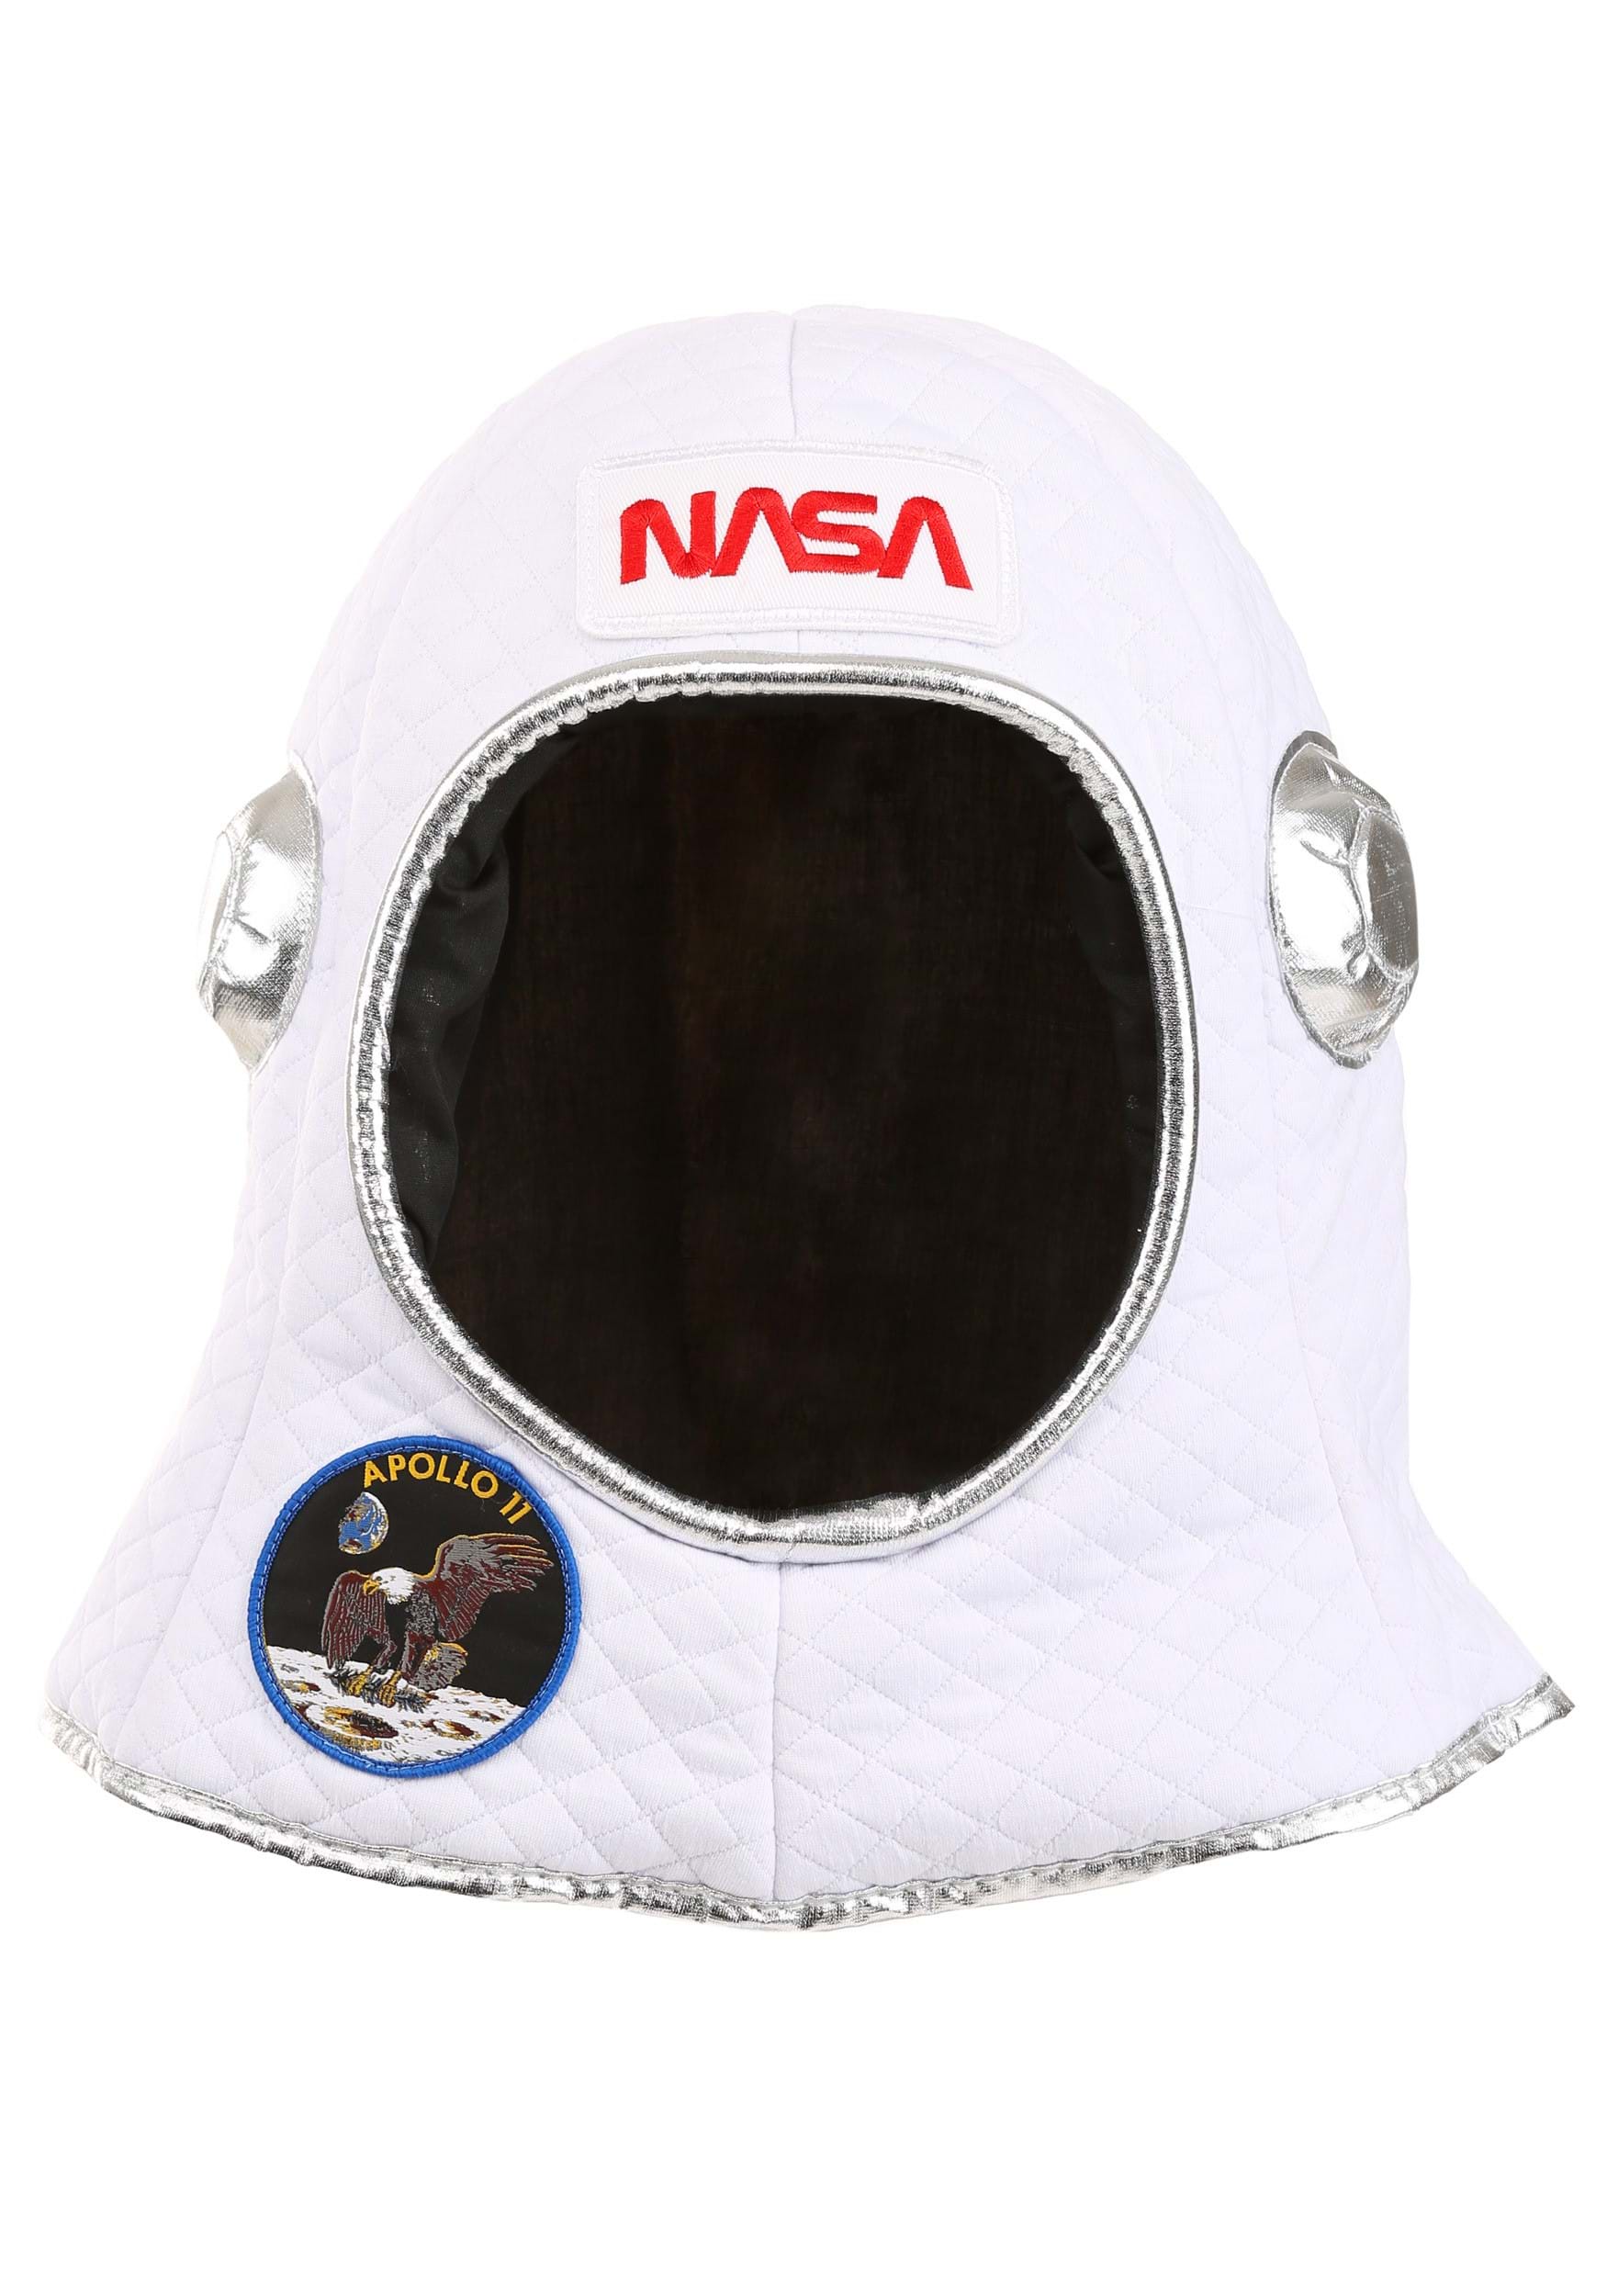 Plush Astronaut Space Costume Helmet